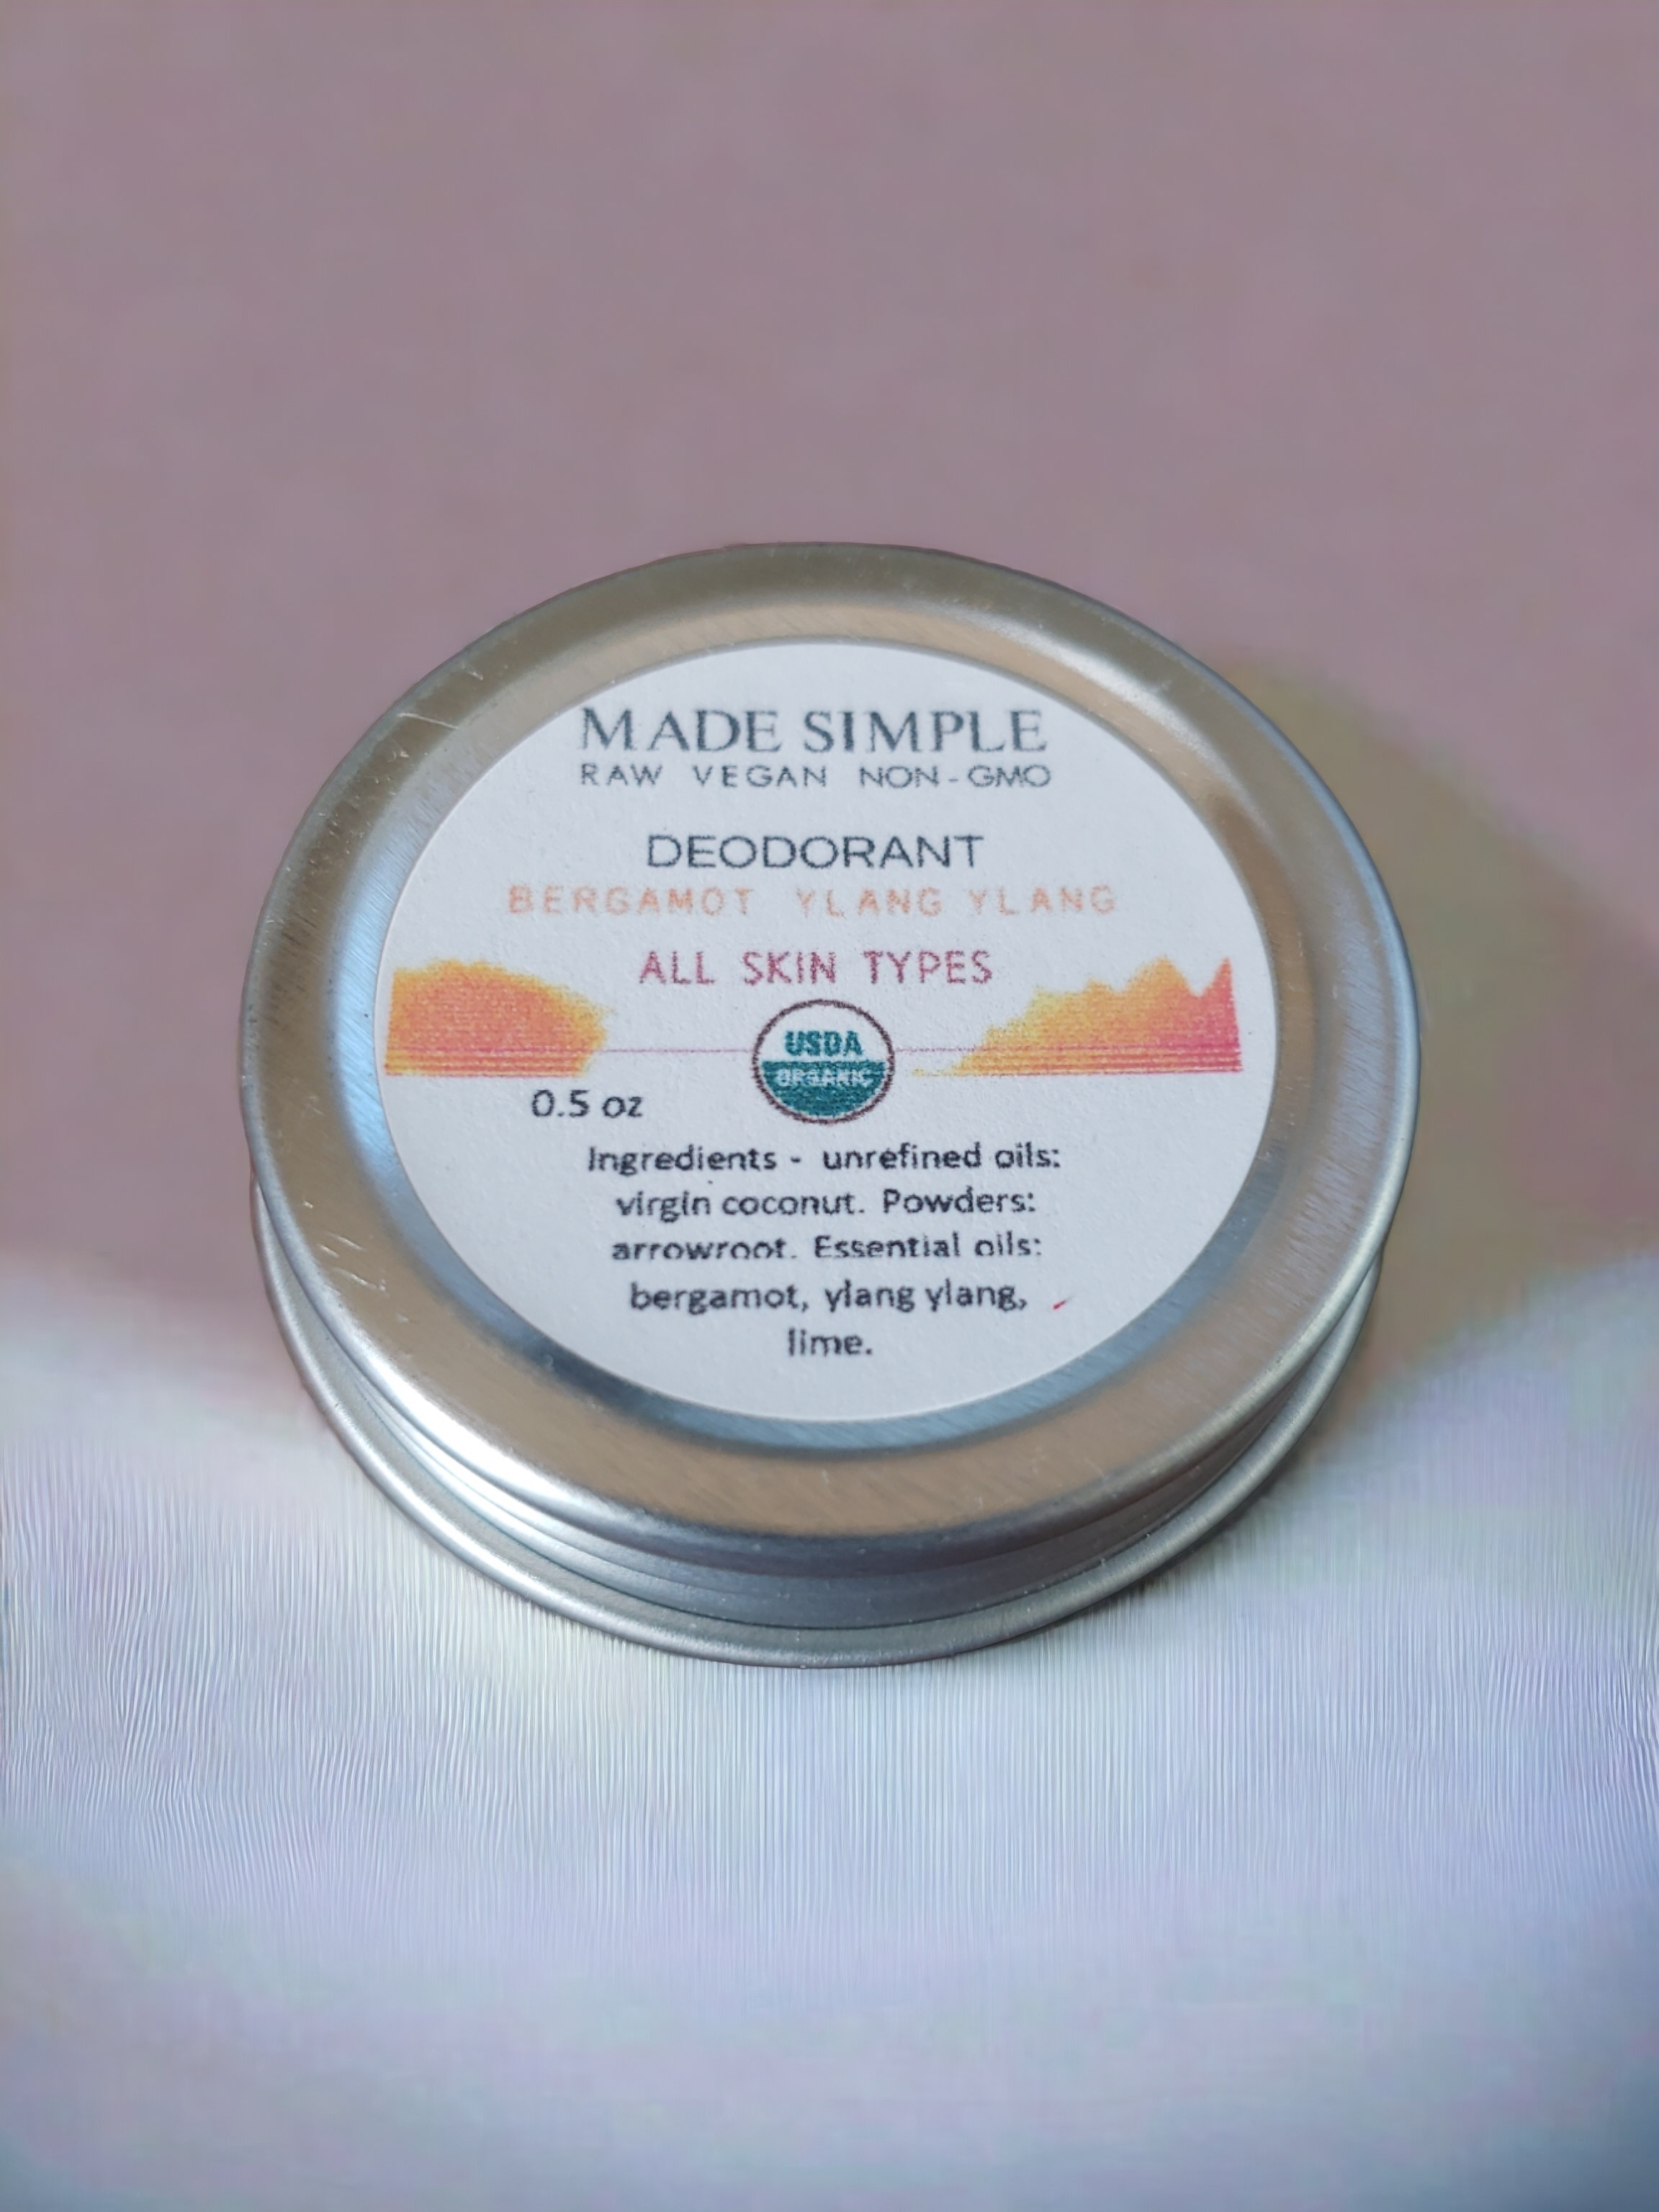 Made-Simple-Skin Care-Bergamot-Ylang Ylang-Deodorant-USDA certified organic-raw-vegan-nonGMO sample